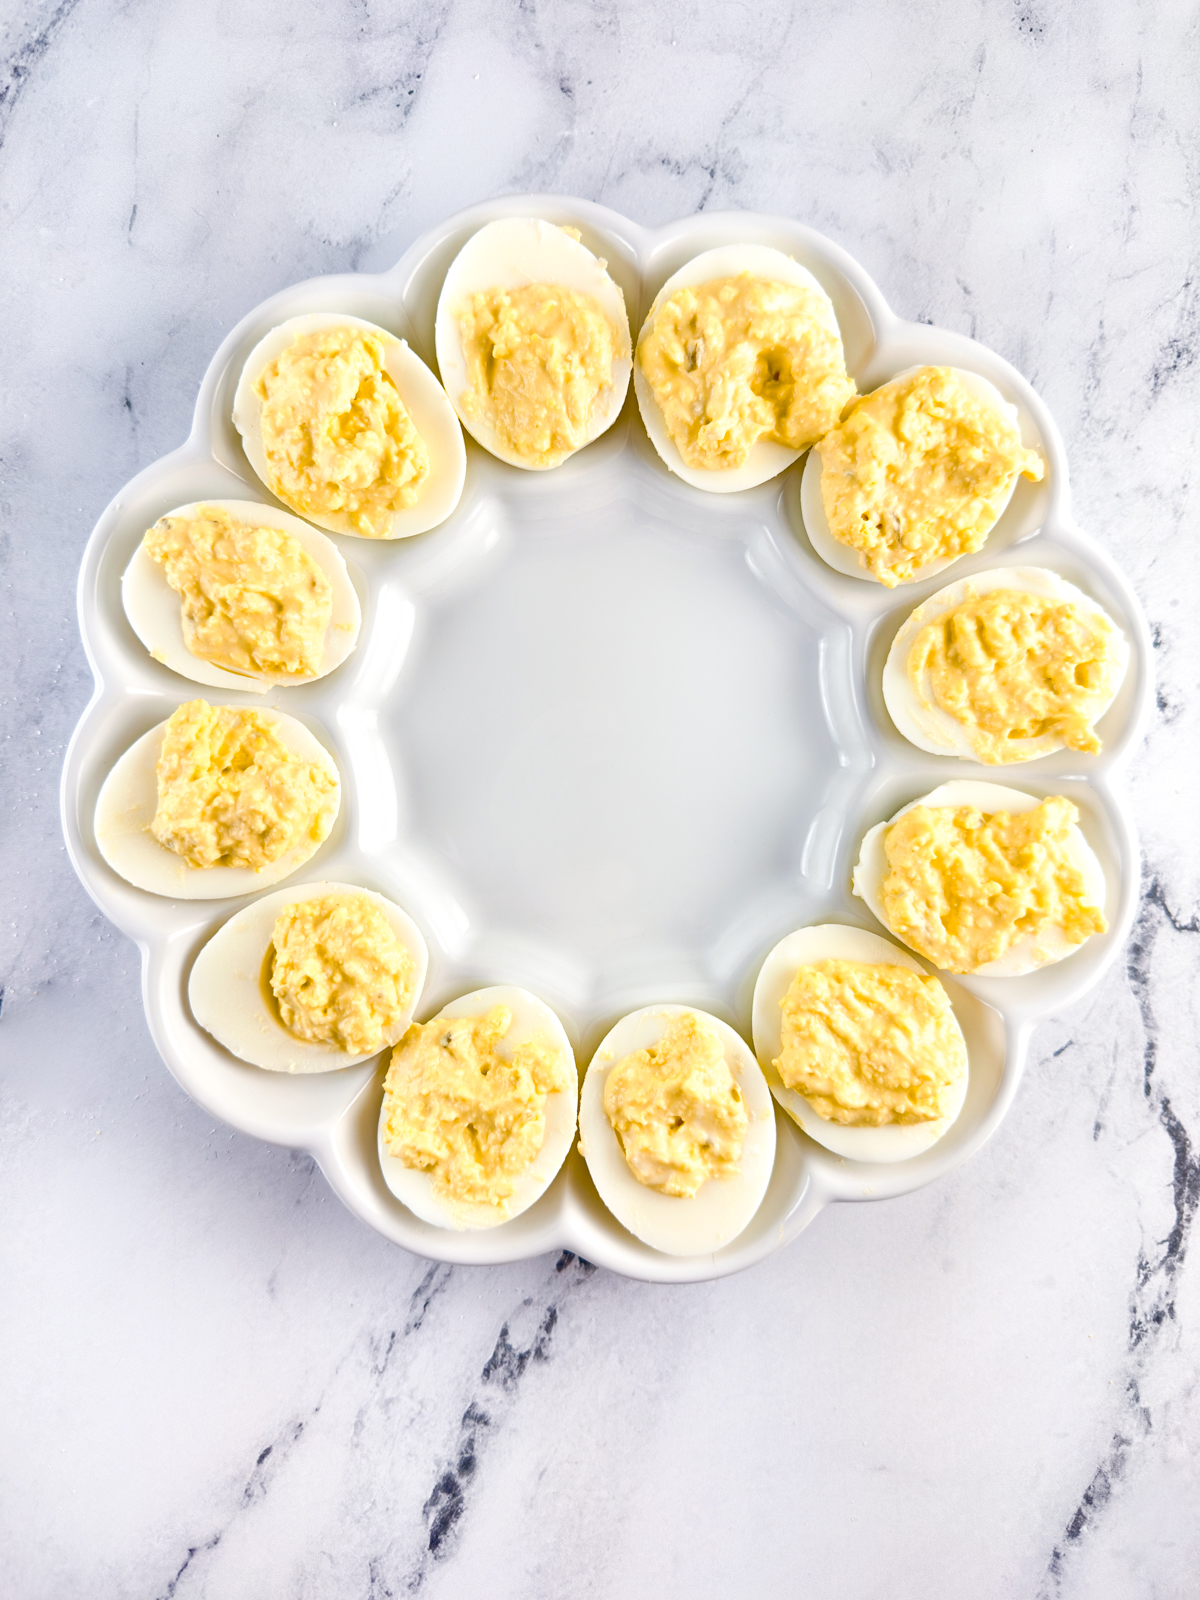 Filled Southern deviled eggs on a deviled egg platter.